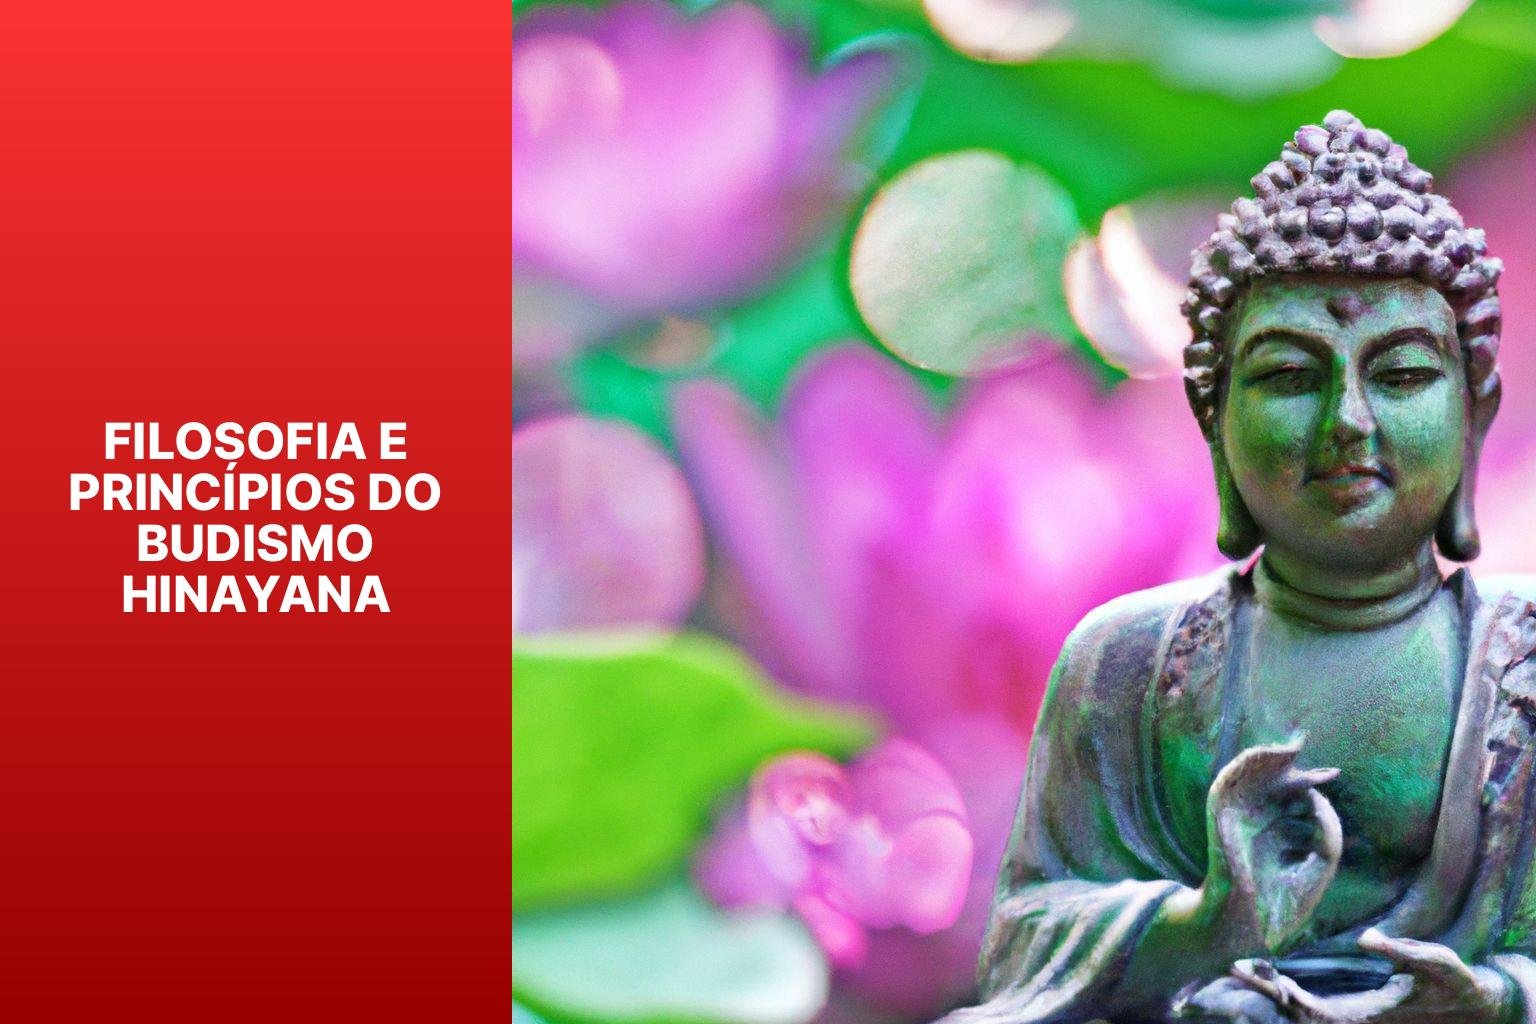 Filosofia e Princípios do Budismo Hinayana - Budismo Hinayana 